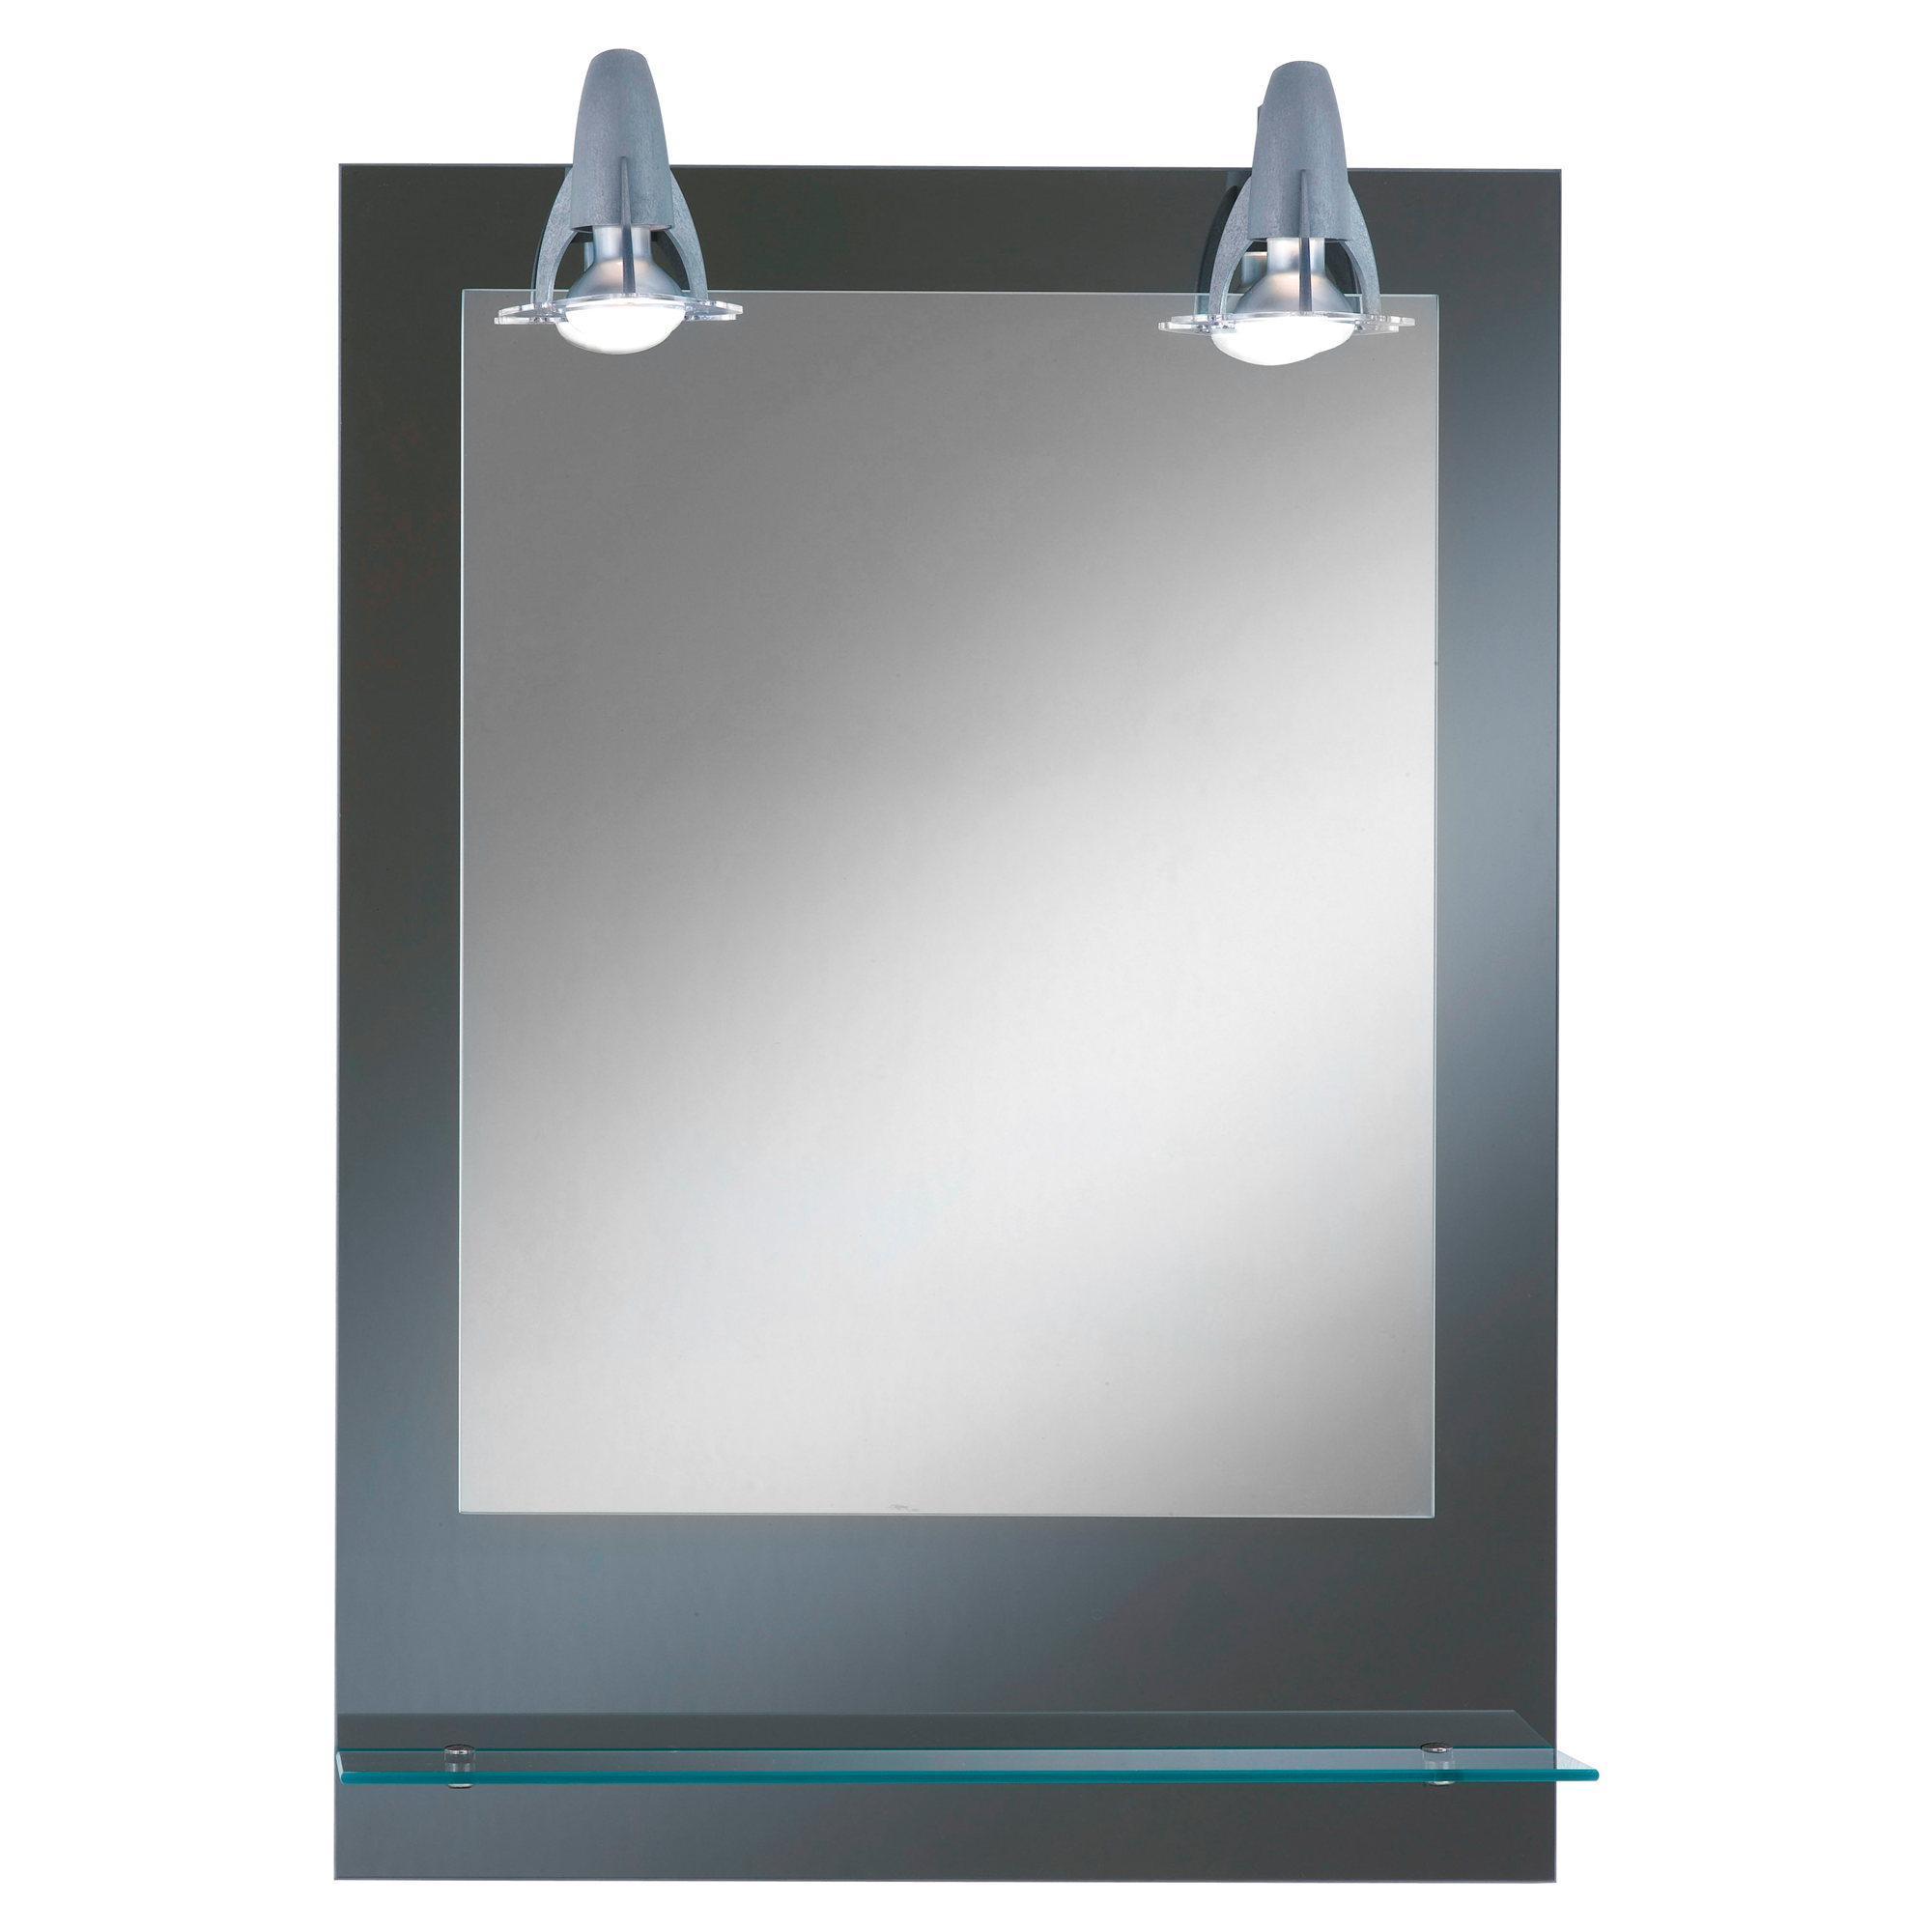 Lichtspiegel Pierre mit Ablage 50 x 70 + product picture